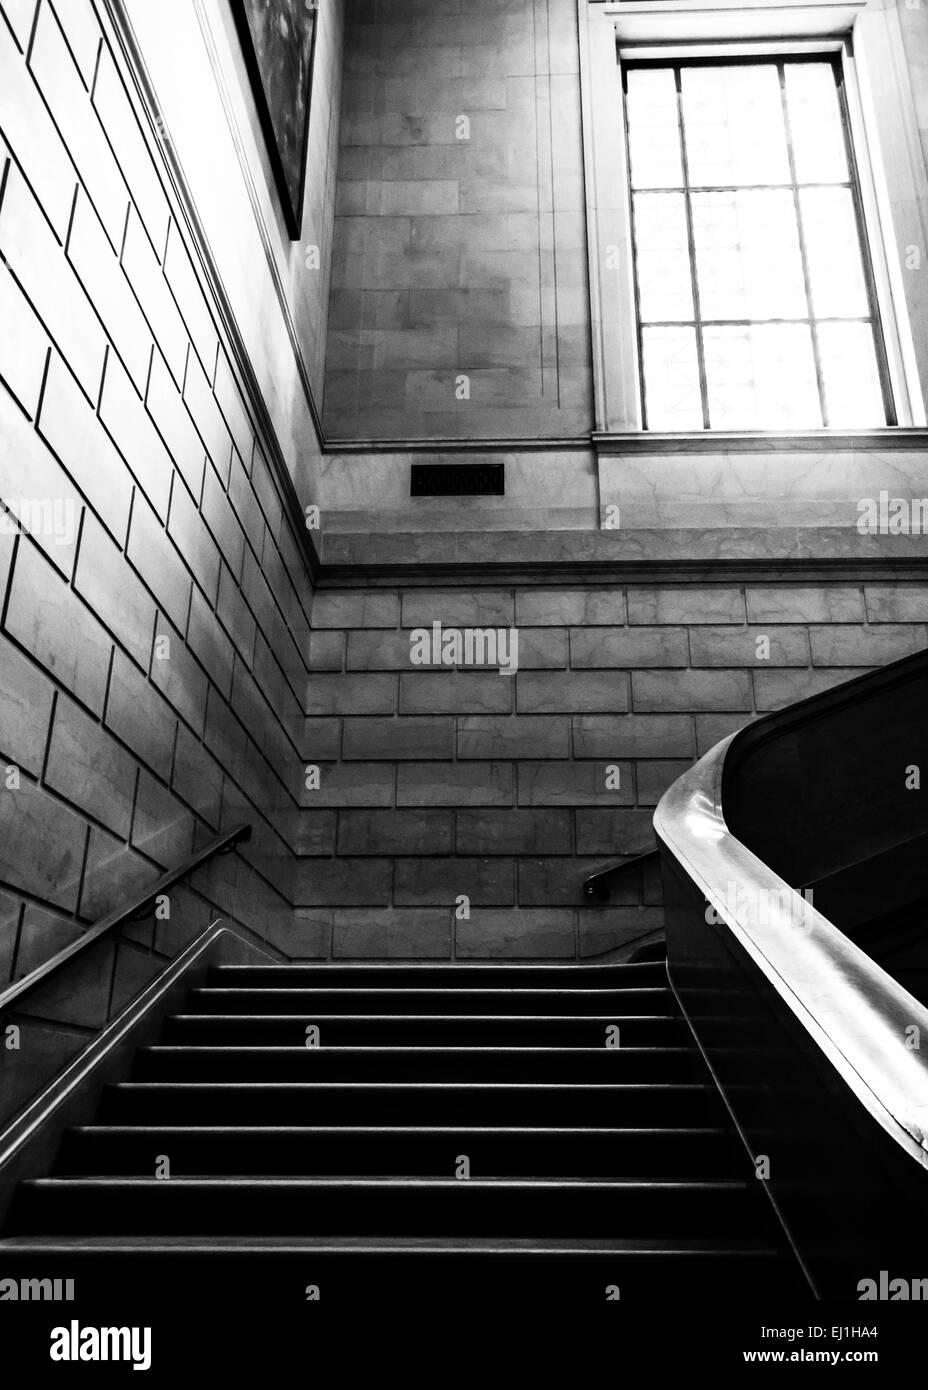 Escalier dans la National Gallery of Art, Washington, DC. Banque D'Images